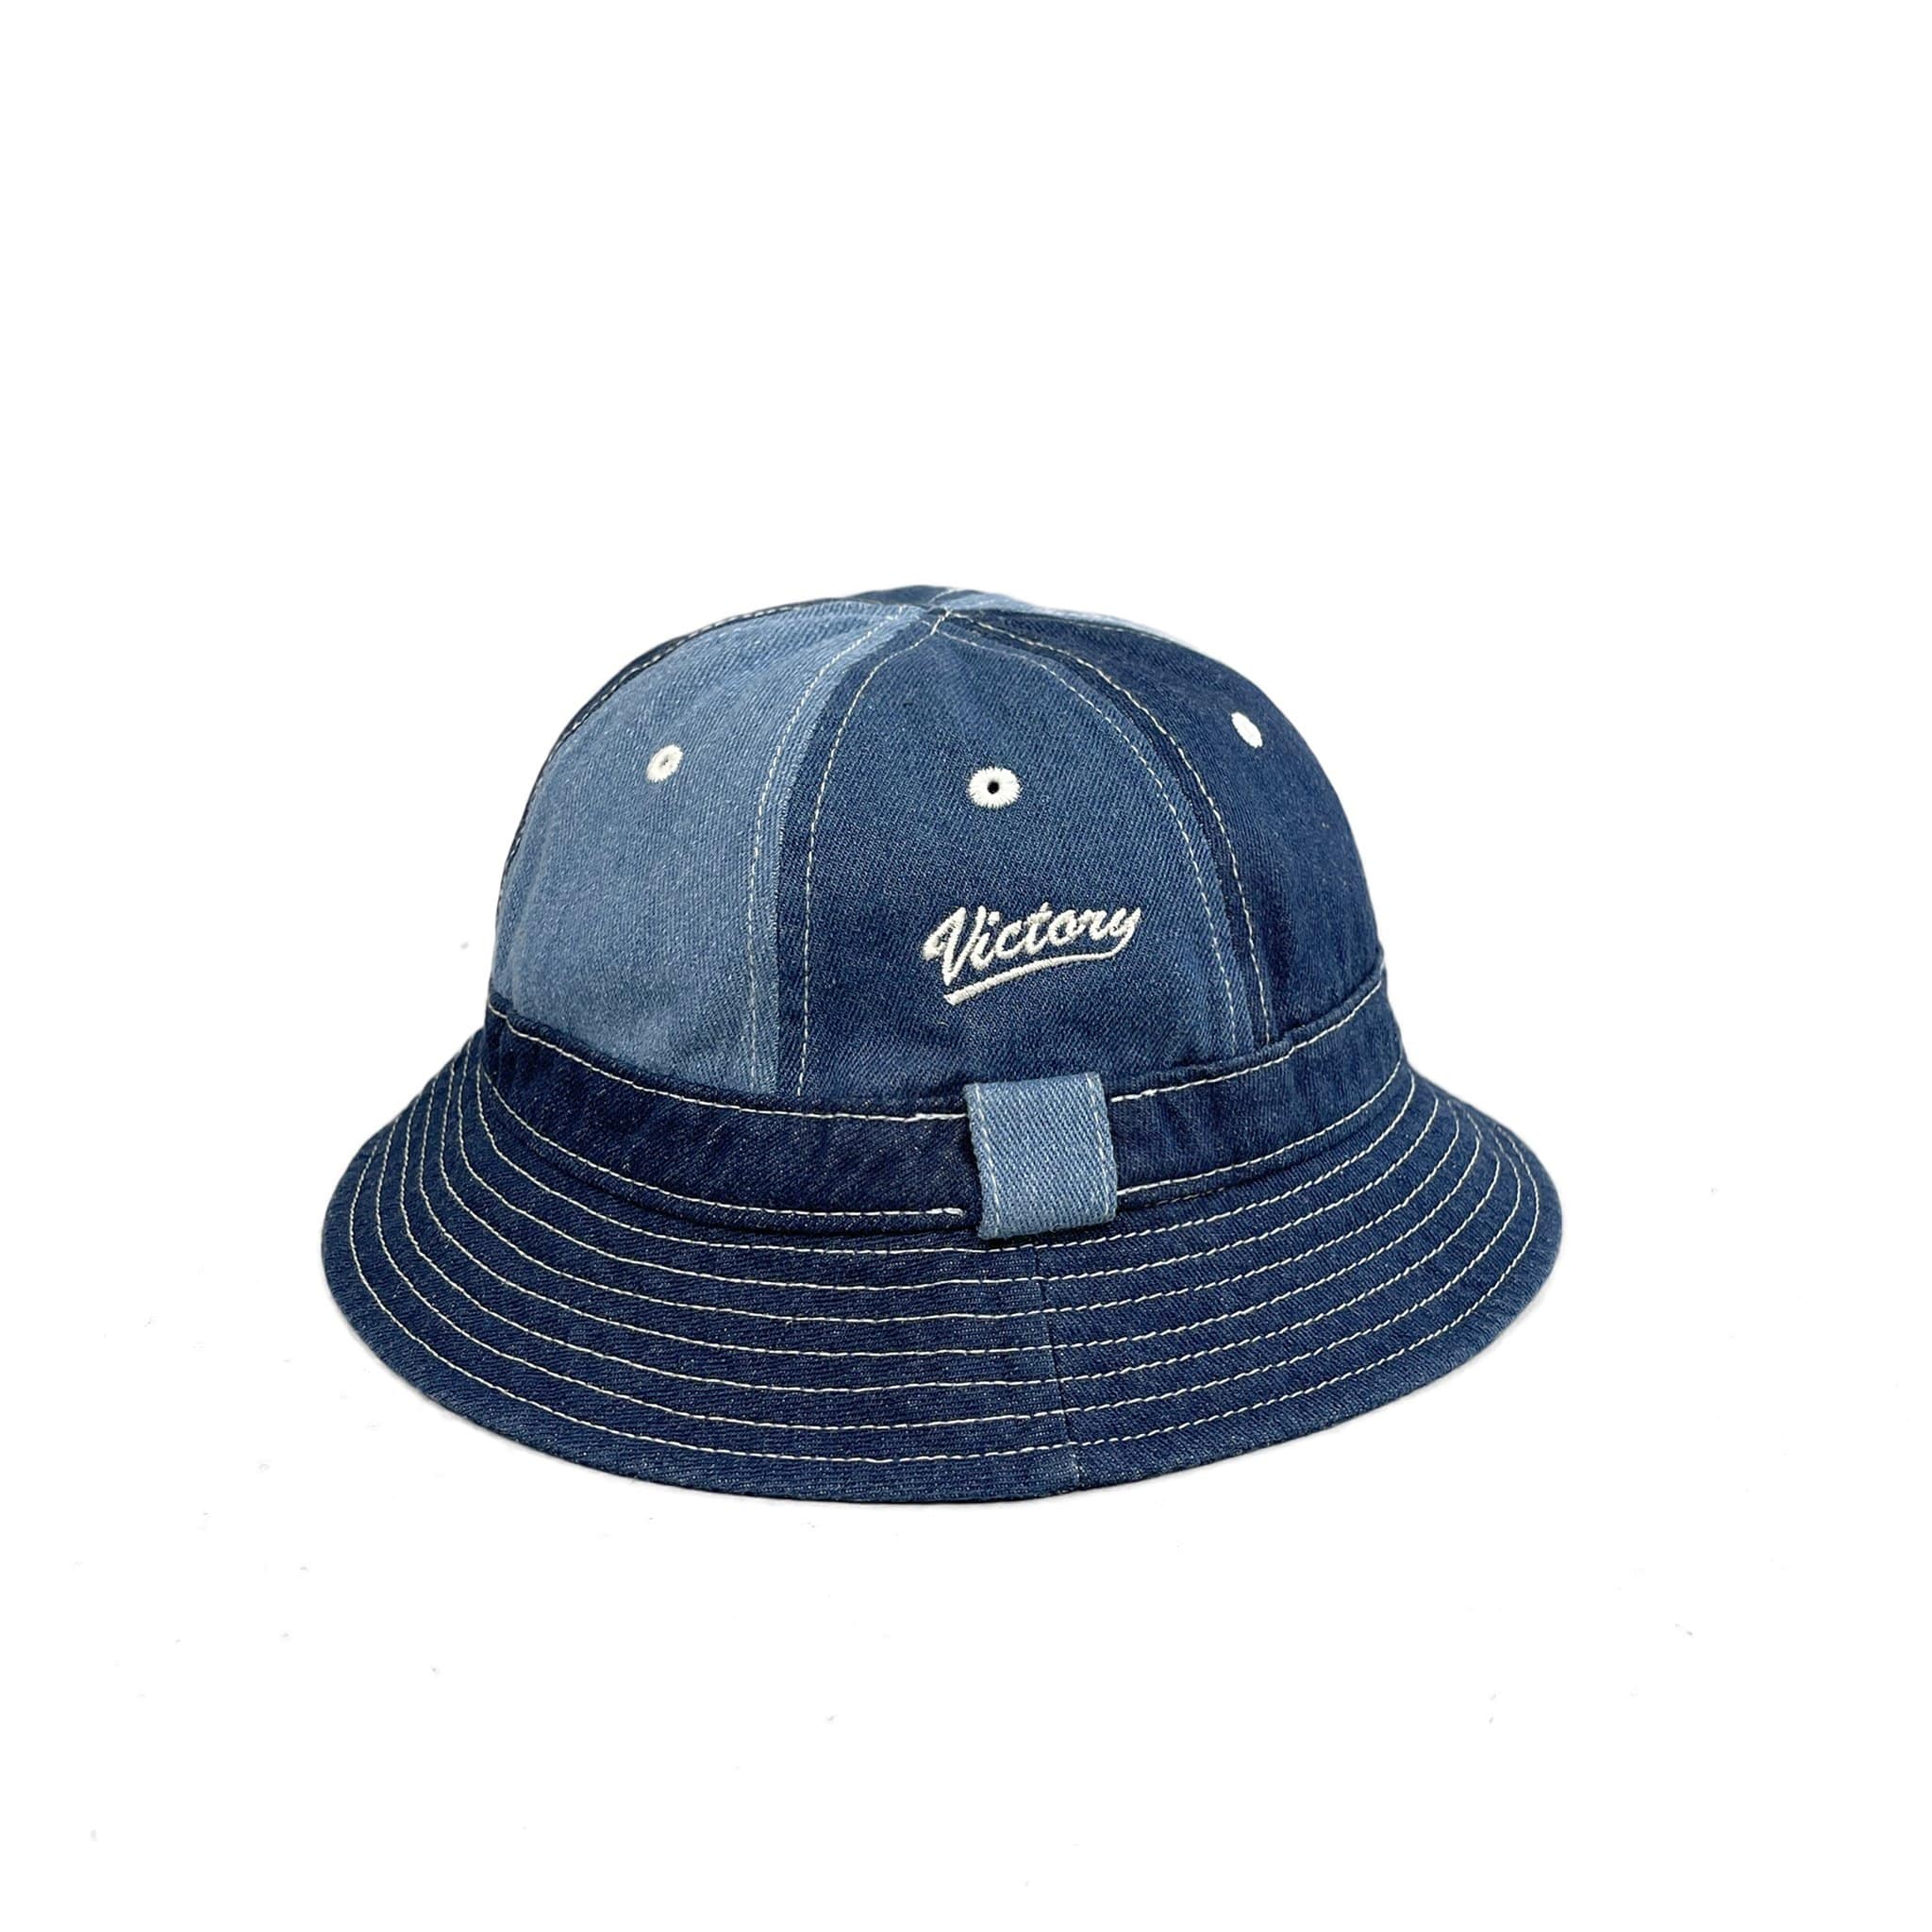 PLAYER DENIM PANELLED BUCKET HAT, colour block bucket hat, summer, vintage 90s